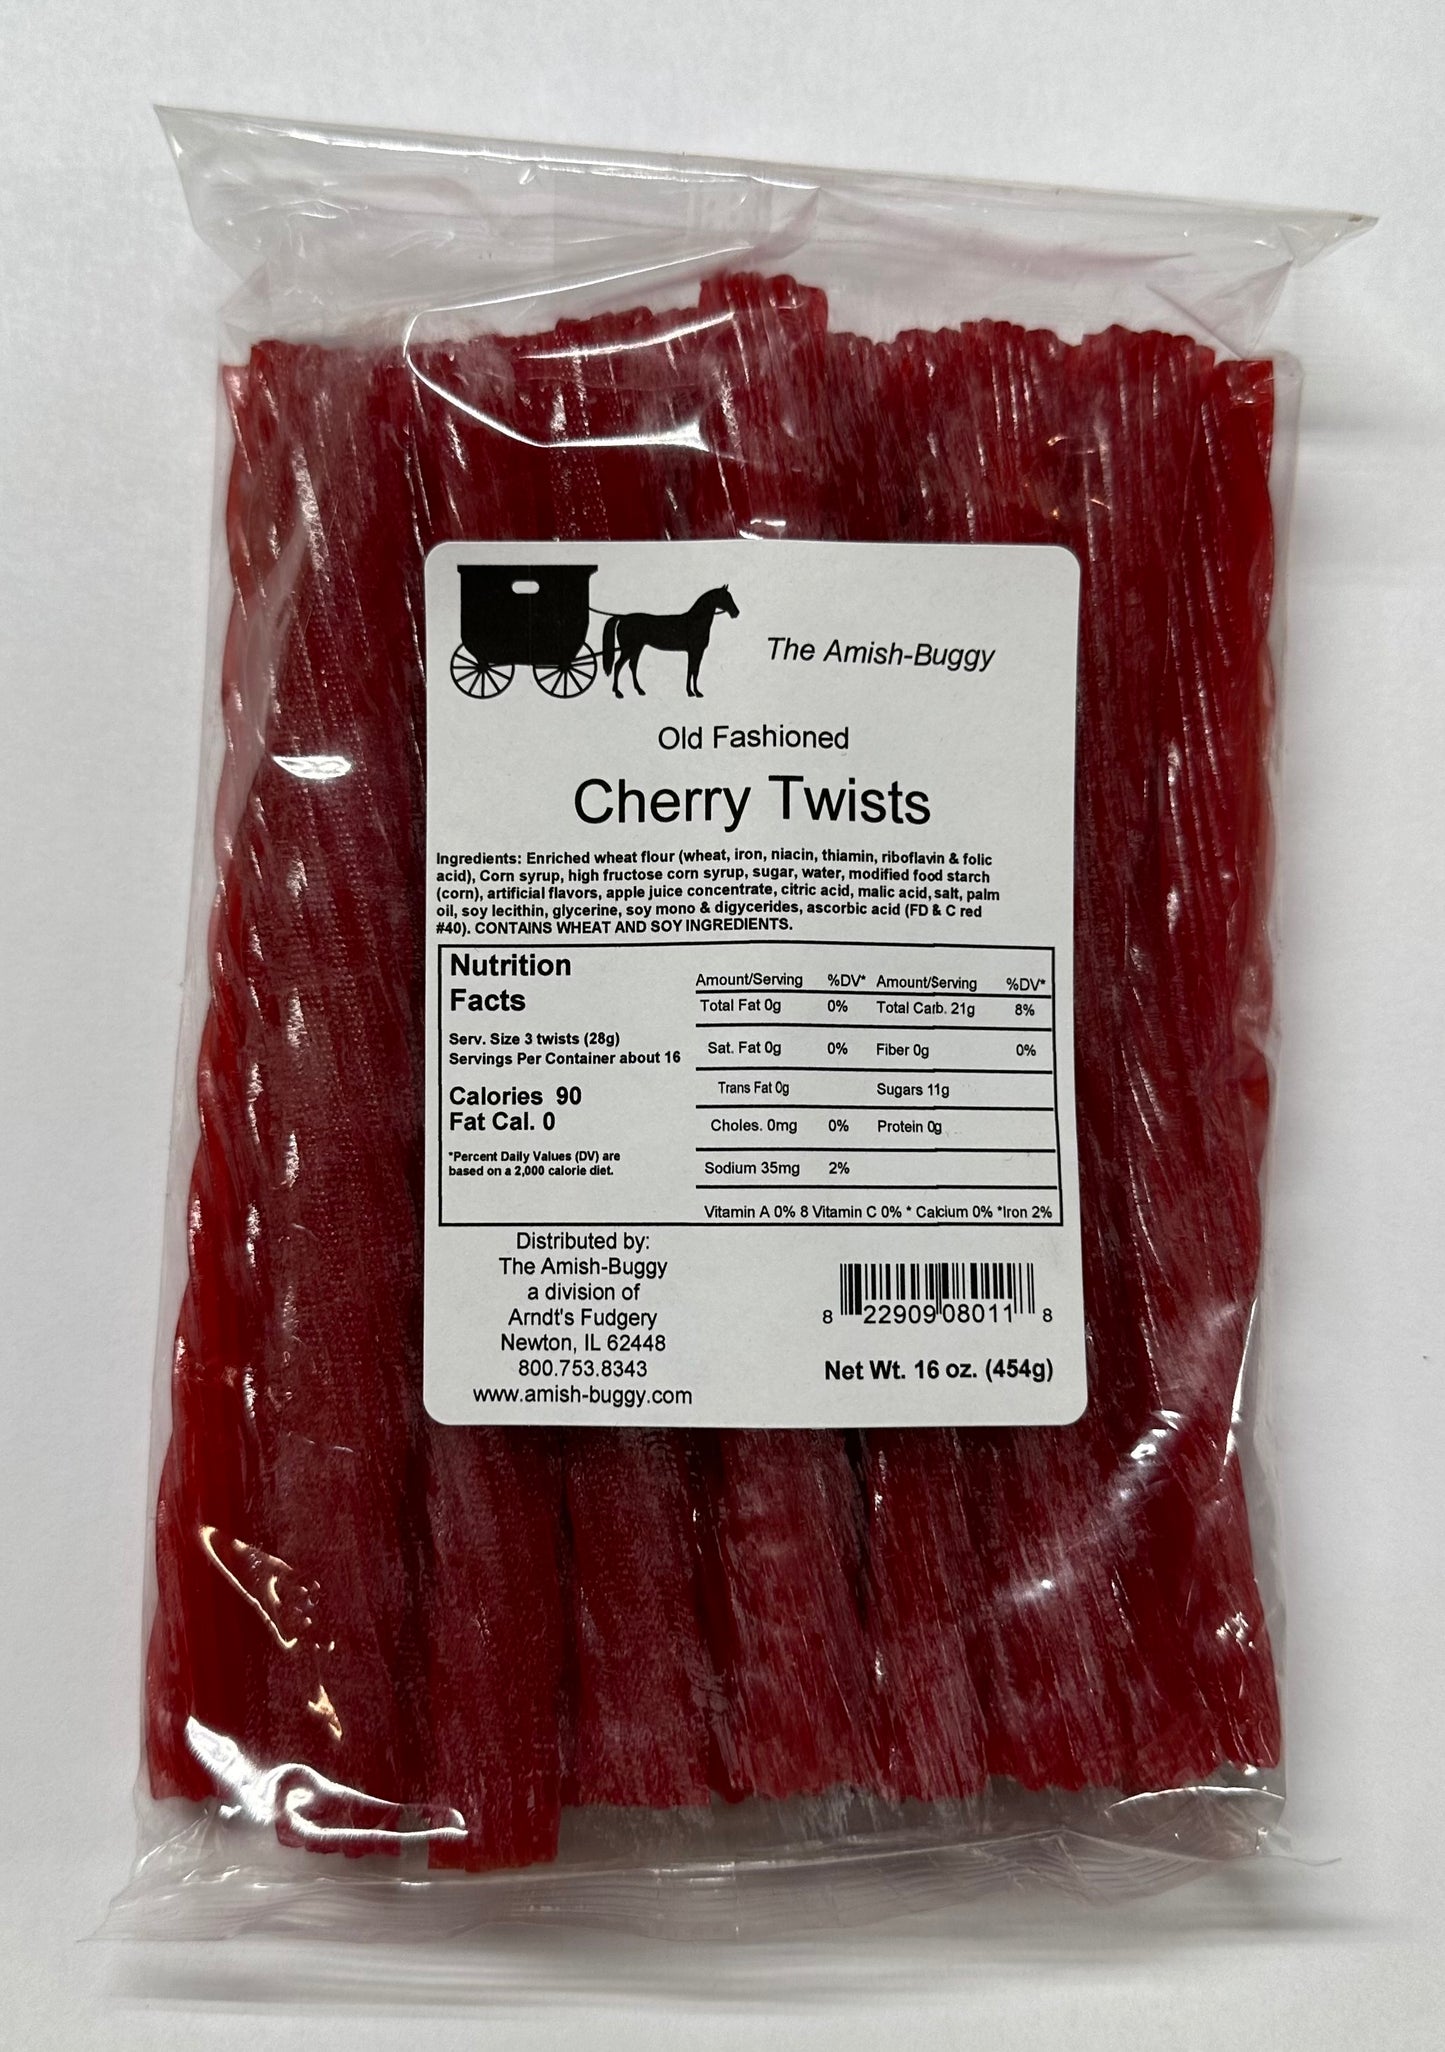 Cherry Licorice Twists